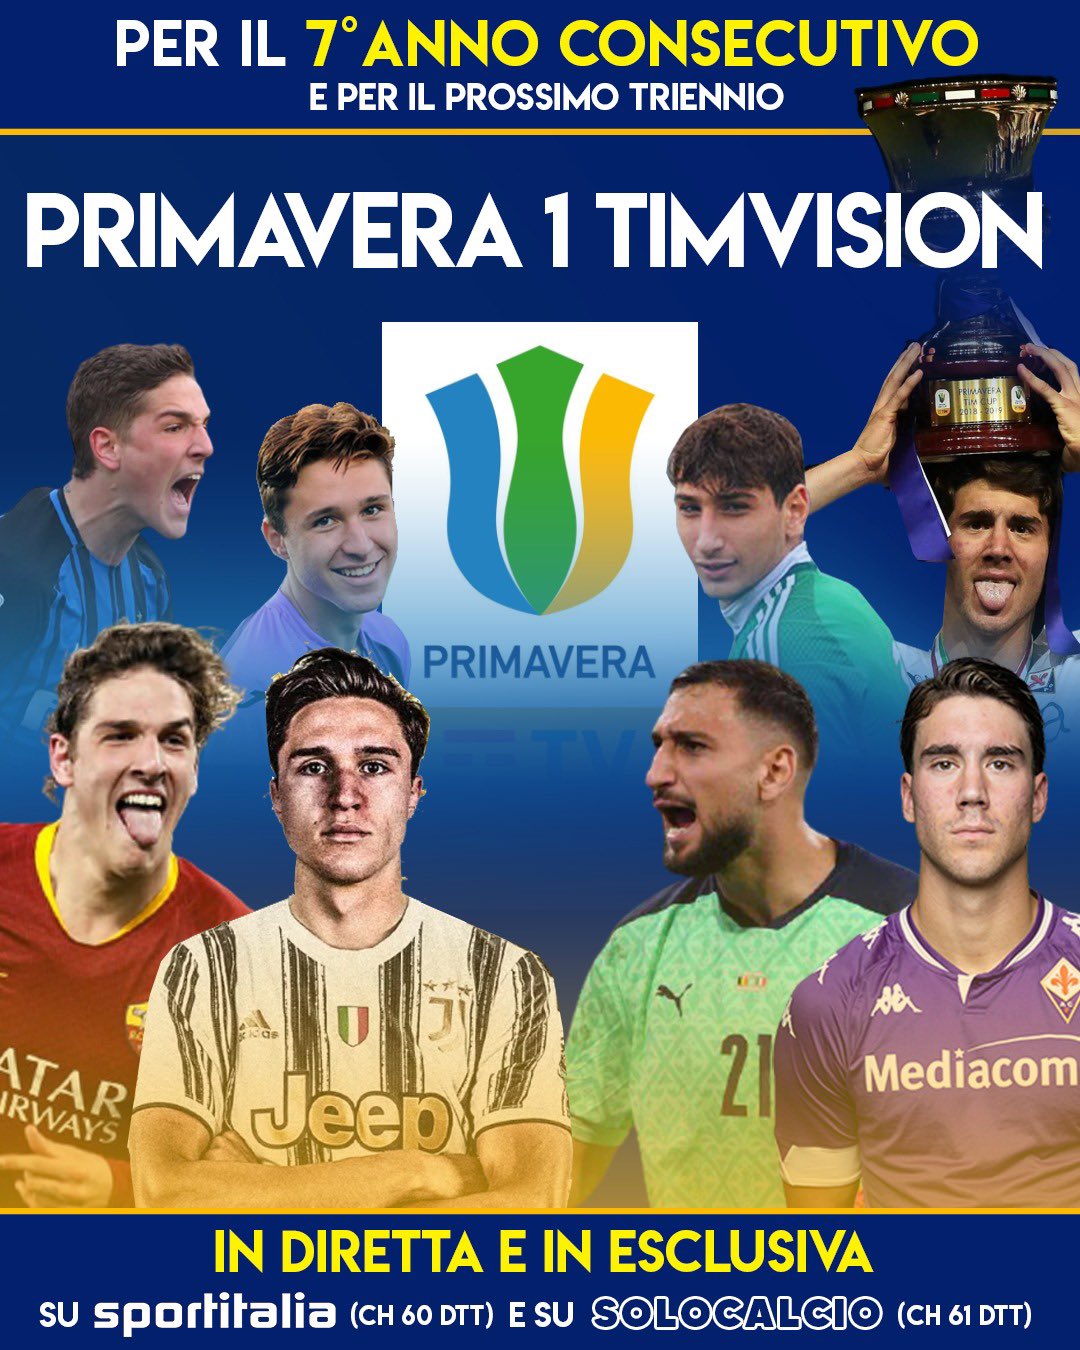 Sportitalia, la casa del Campionato Primavera 1 TIMVISION per le prossime 3 stagioni Digital-News.it